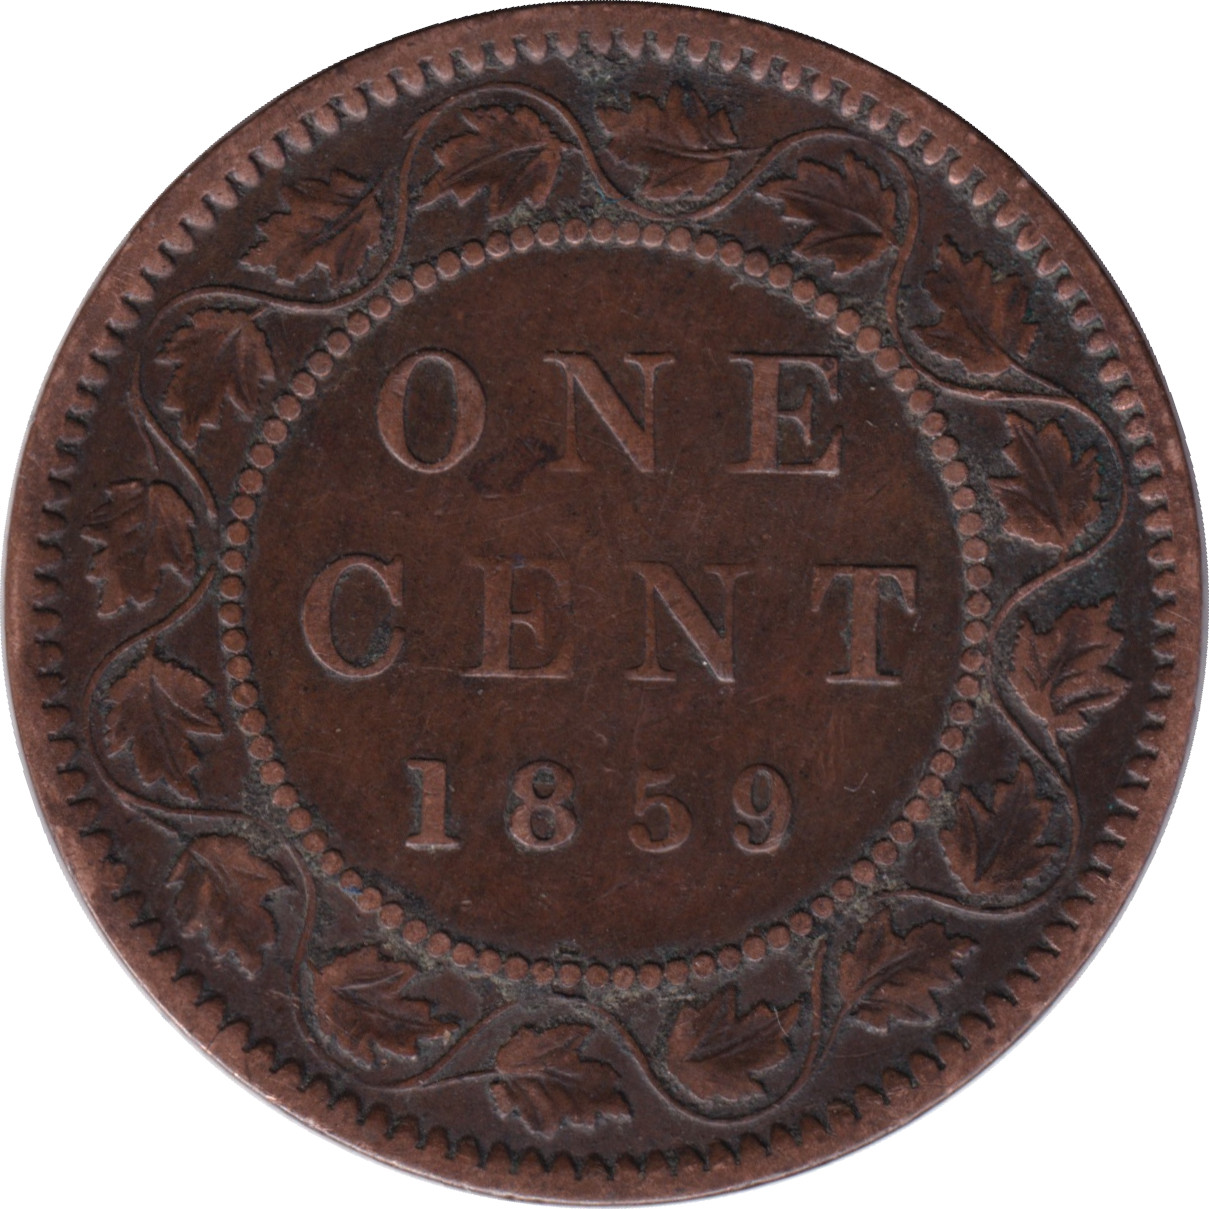 1 cent - Victoria - Laureate head